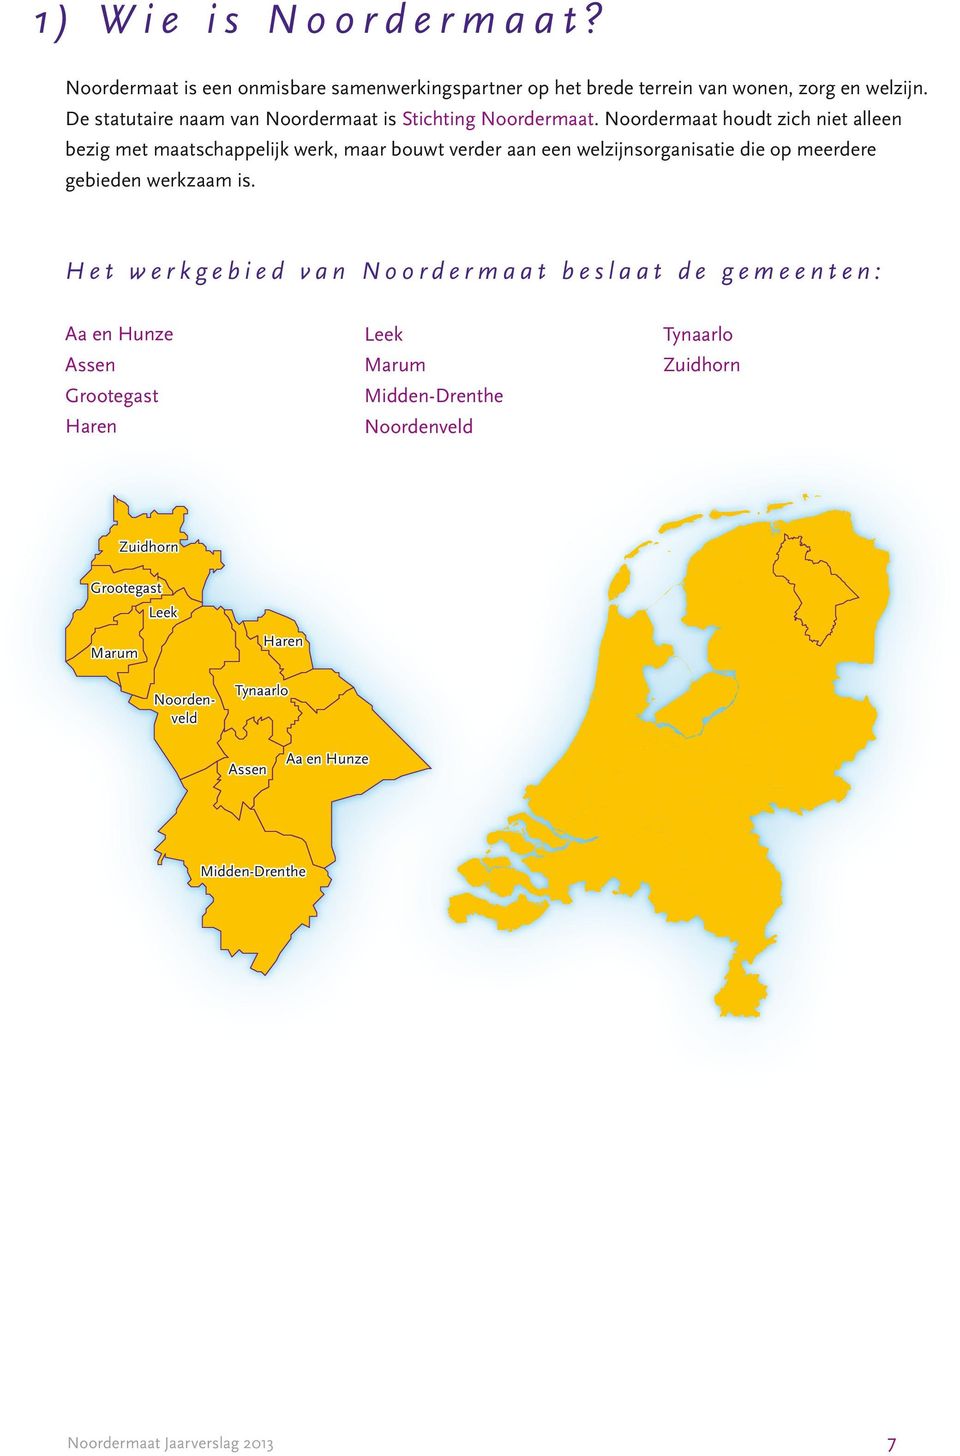 Noordermaat houdt zich niet alleen bezig met maatschappelijk werk, maar bouwt verder aan een welzijnsorganisatie die op meerdere gebieden werkzaam is.